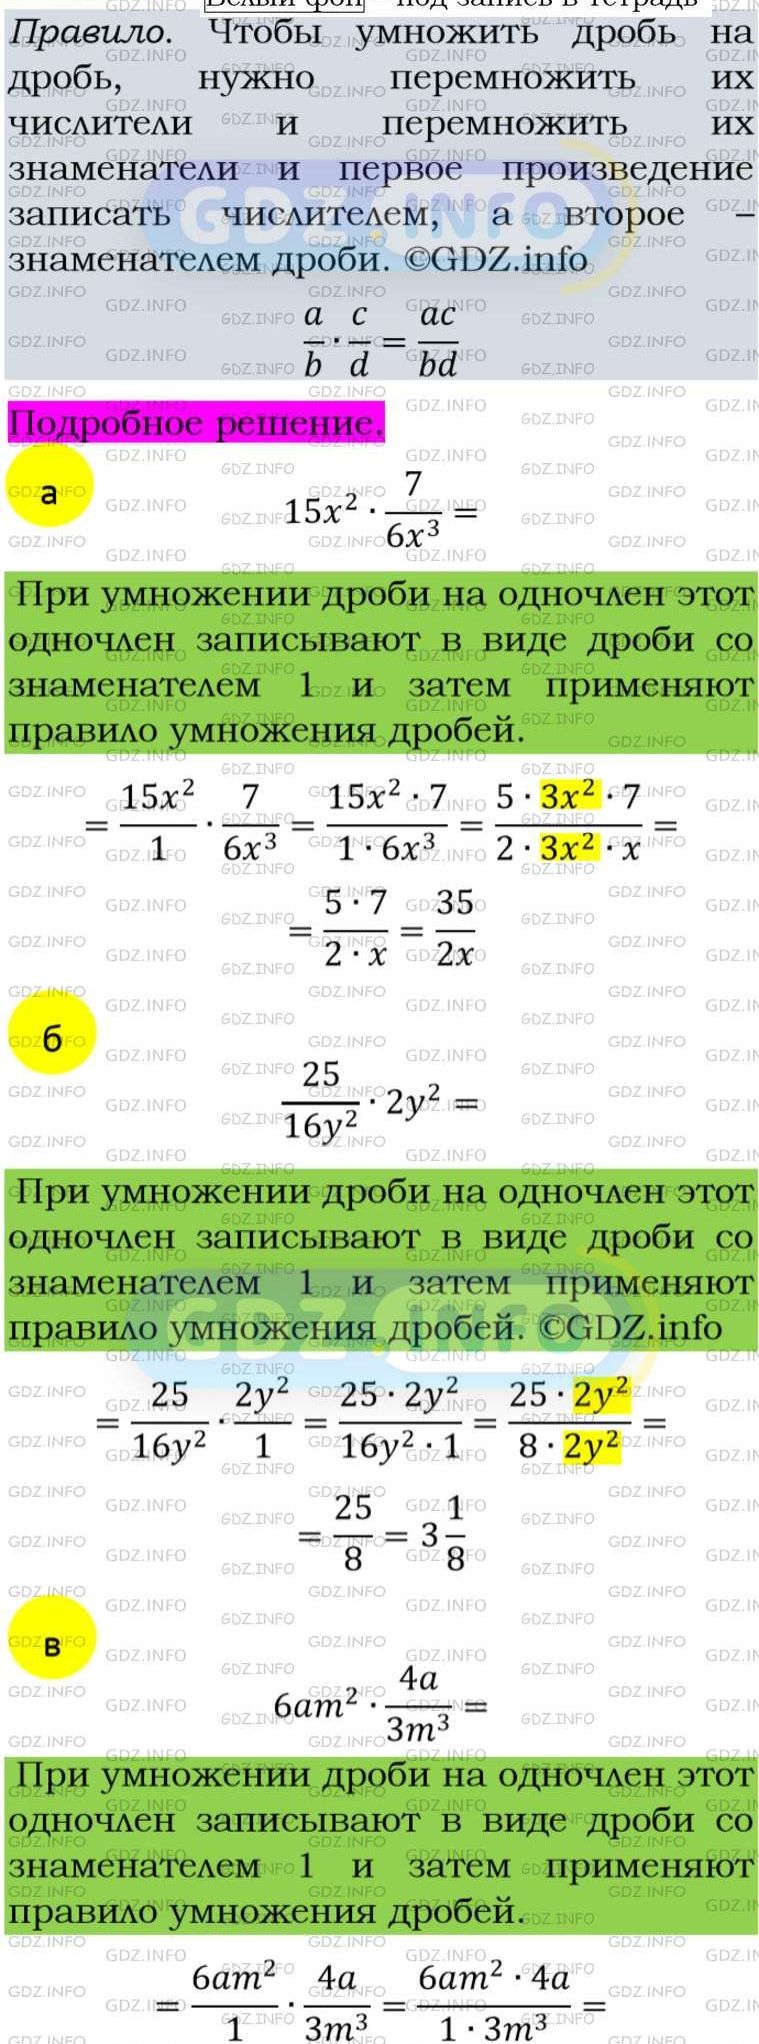 Фото подробного решения: Номер задания №113 из ГДЗ по Алгебре 8 класс: Макарычев Ю.Н.